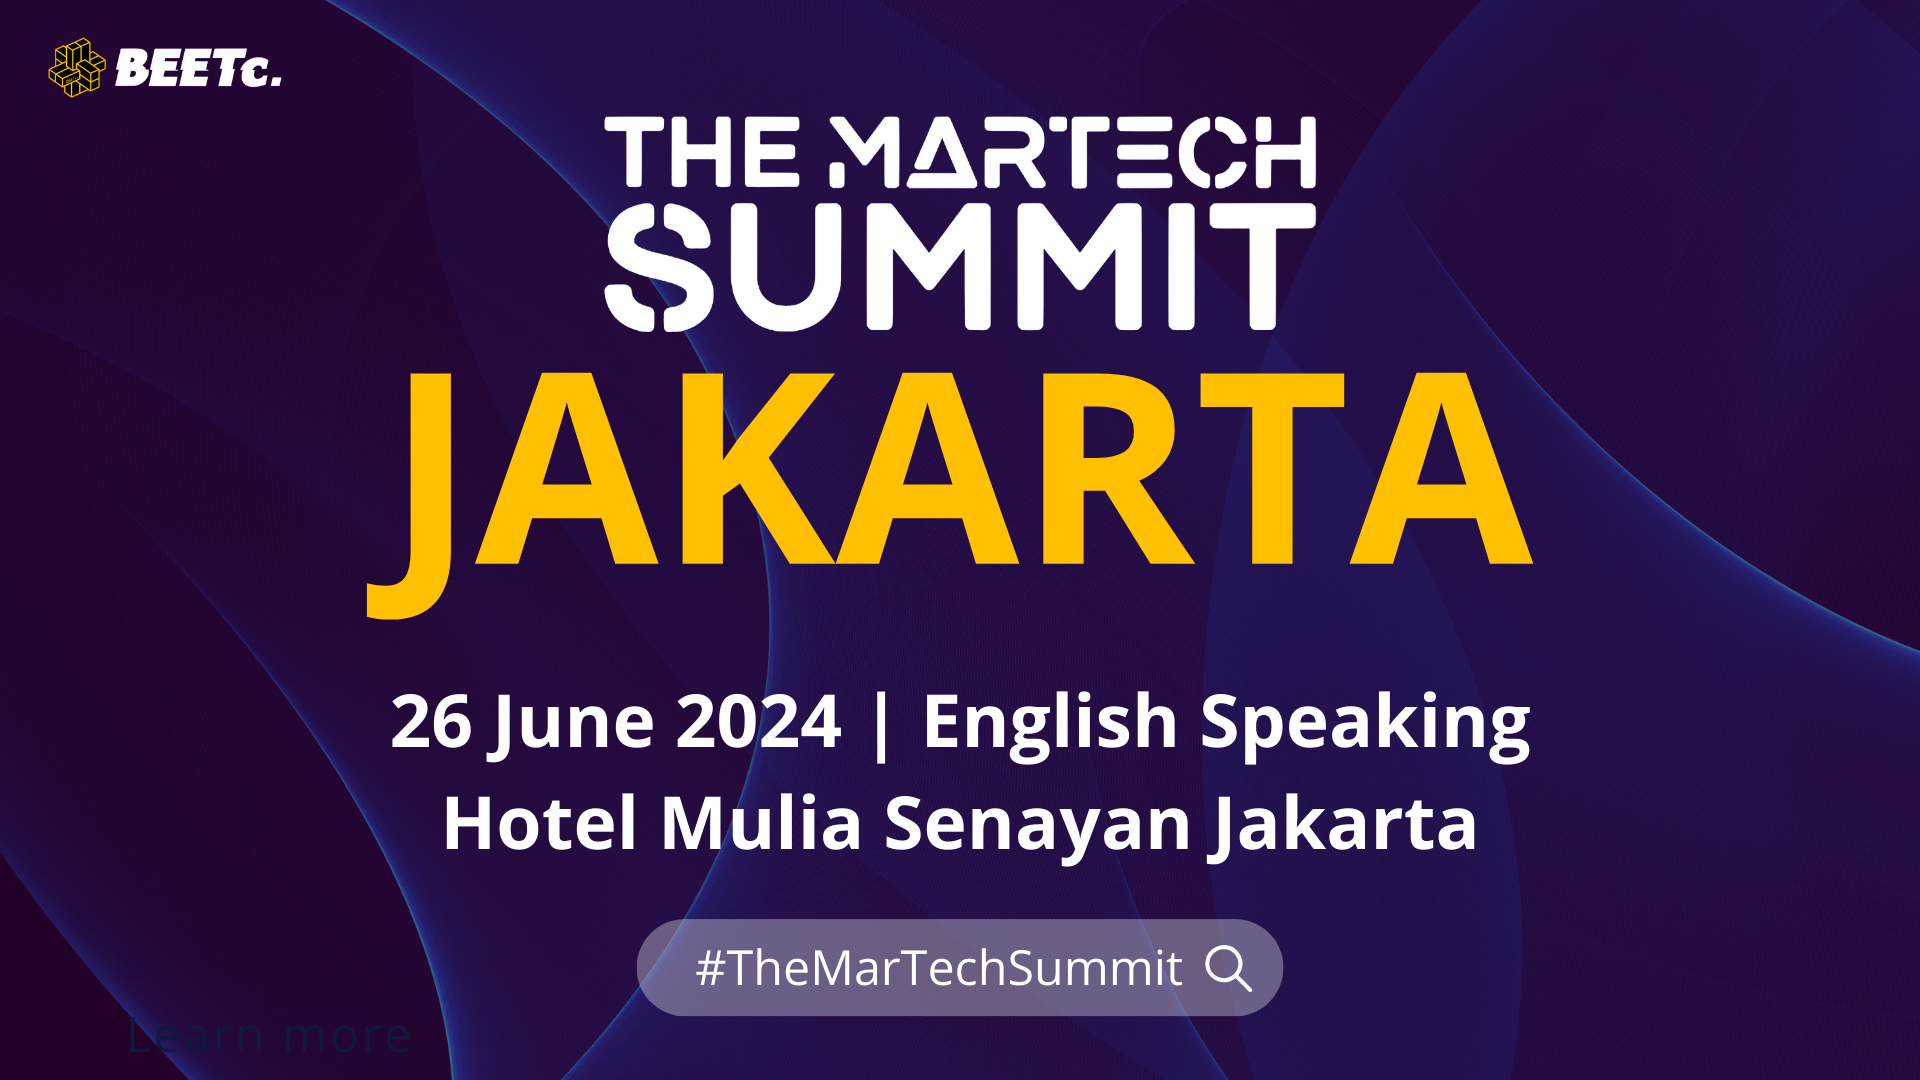 The MarTech Summit Jakarta akan berlangsung pada 26 Juni 2024 di Hotel Mulia Senayan Jakarta